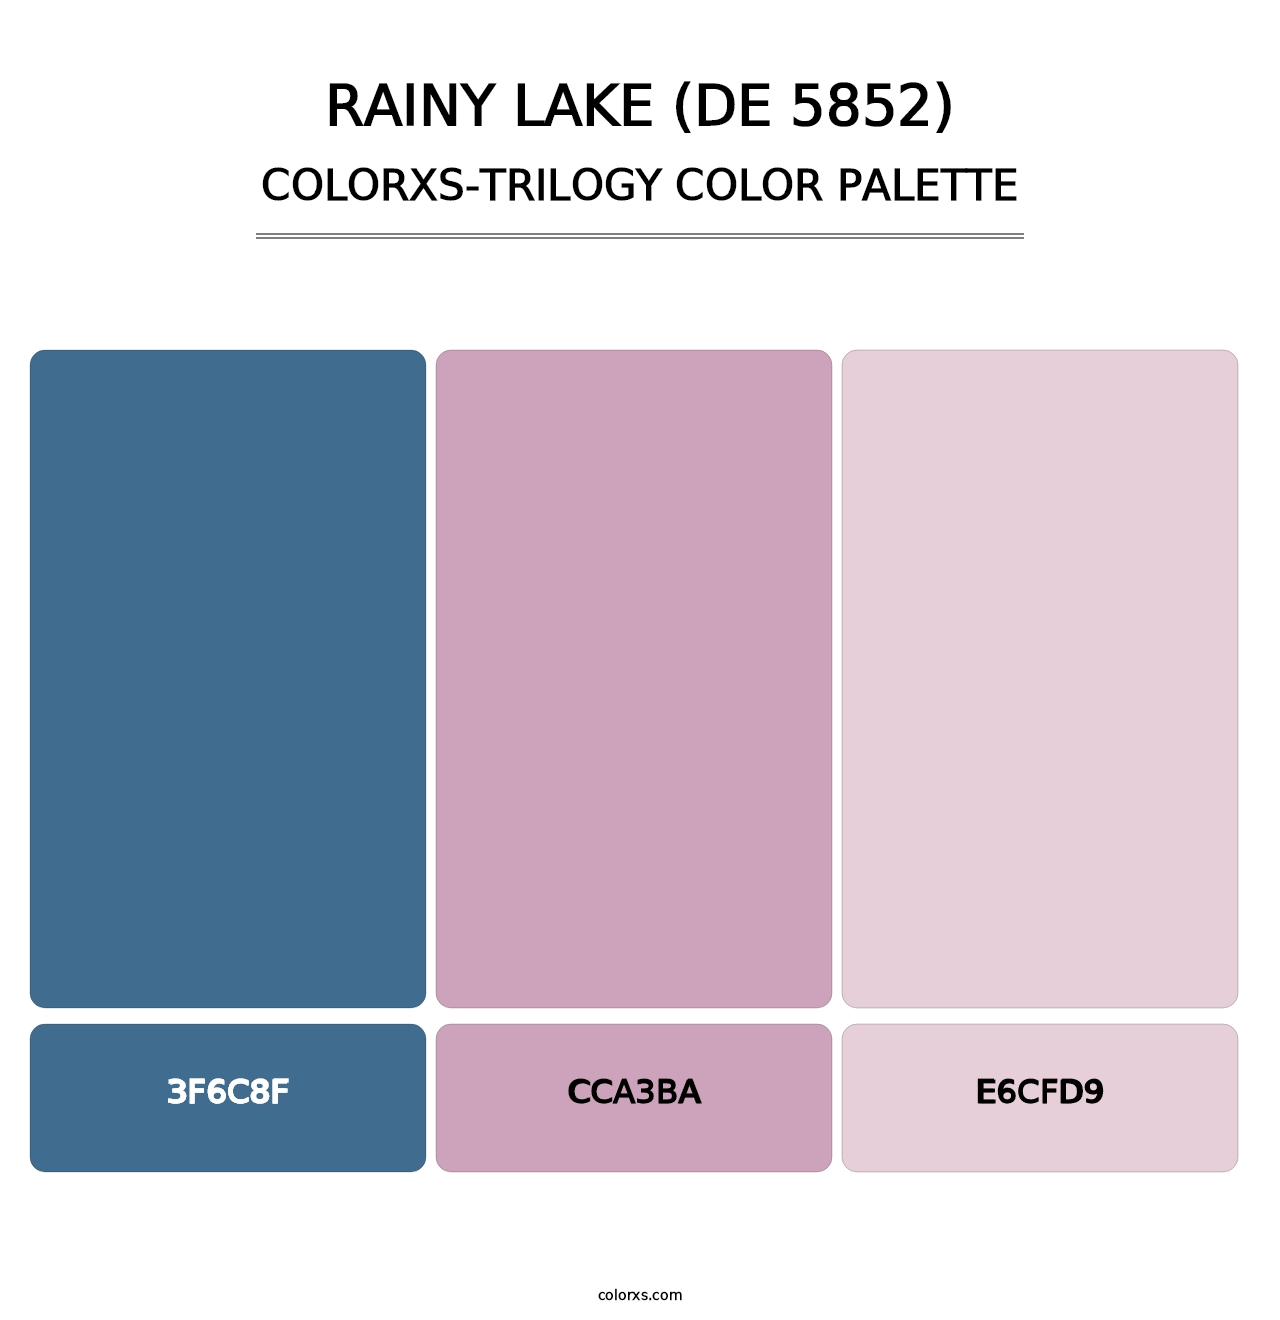 Rainy Lake (DE 5852) - Colorxs Trilogy Palette